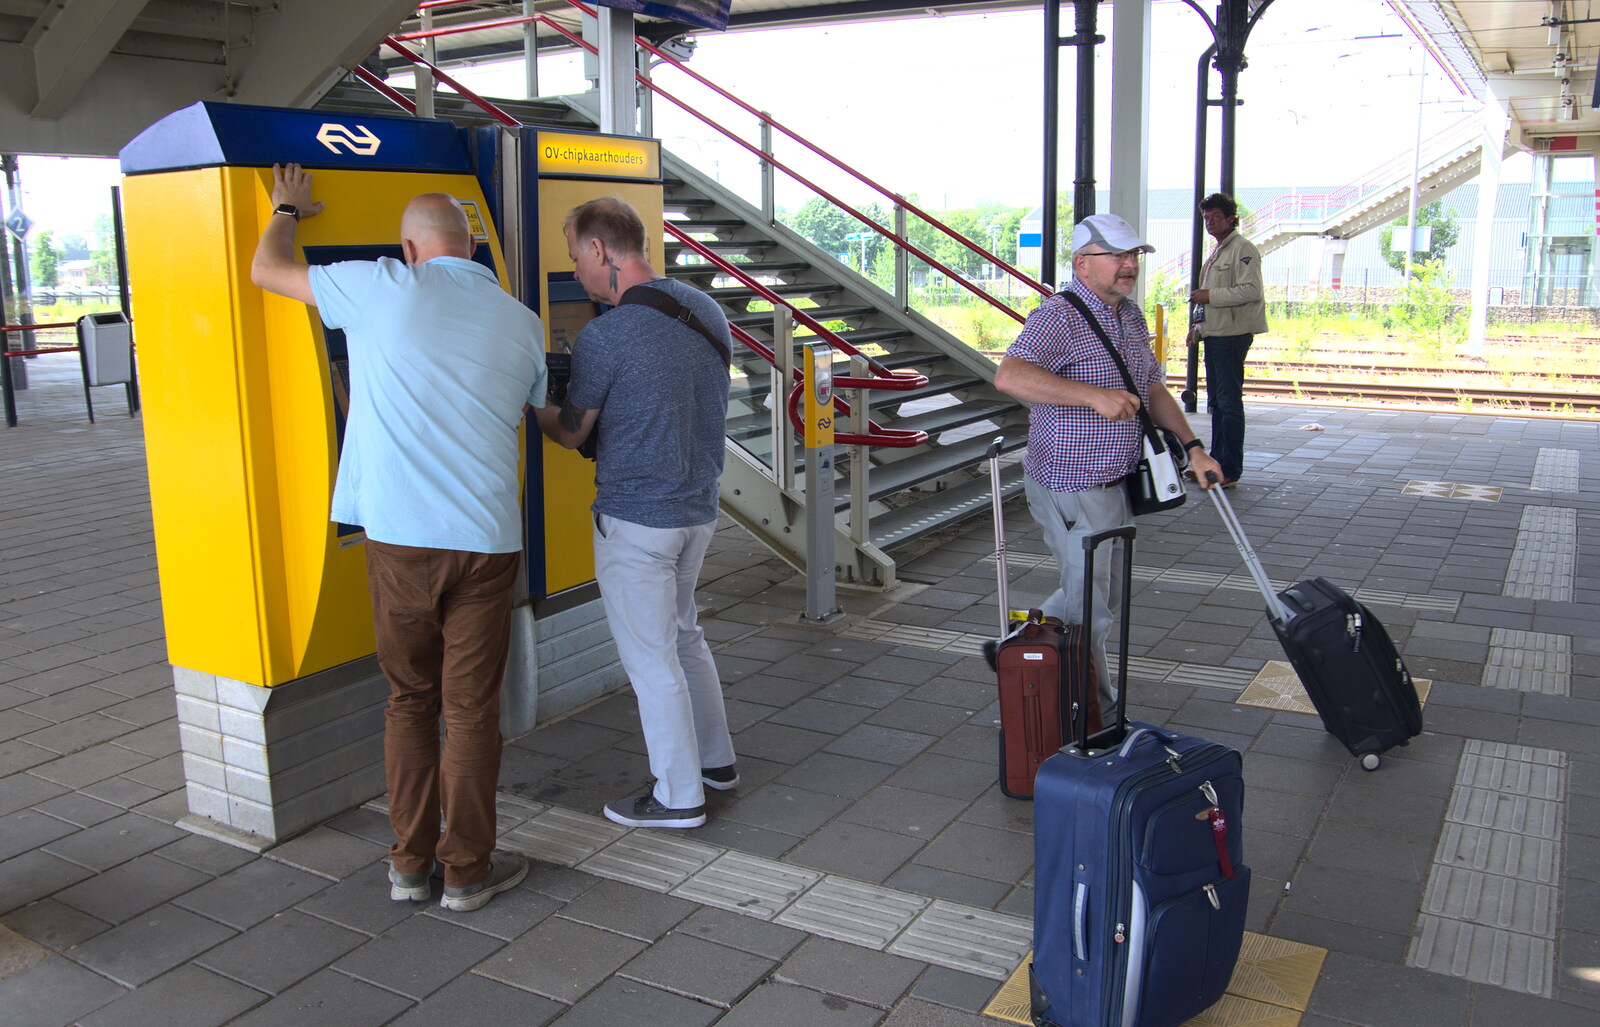 Martin helps us get some train tickets from Martin's James Bond 50th Birthday, Asperen, Gelderland, Netherlands - 9th June 2018